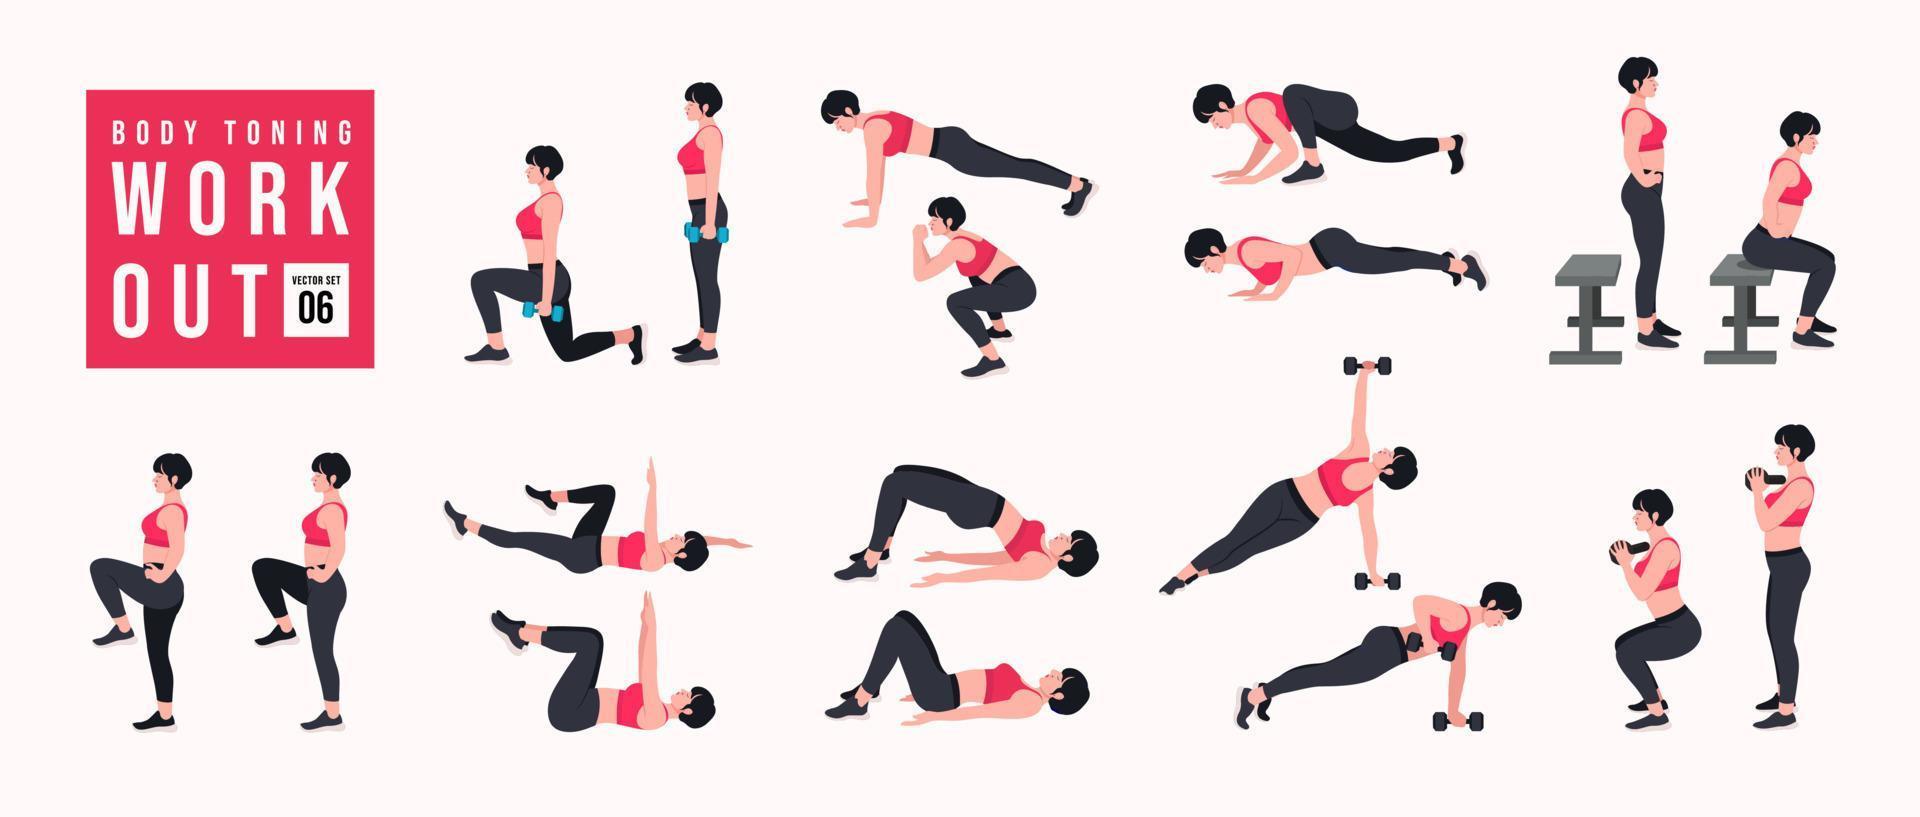 Body-Toning-Workout-Set. frauen, die fitness- und yogaübungen machen. Ausfallschritte, Liegestütze, Kniebeugen, Hantelrudern, Burpees, Seitenplanken, Situps, Glute Bridge, Beinheben, Russian Twist, Side Crunch usw vektor